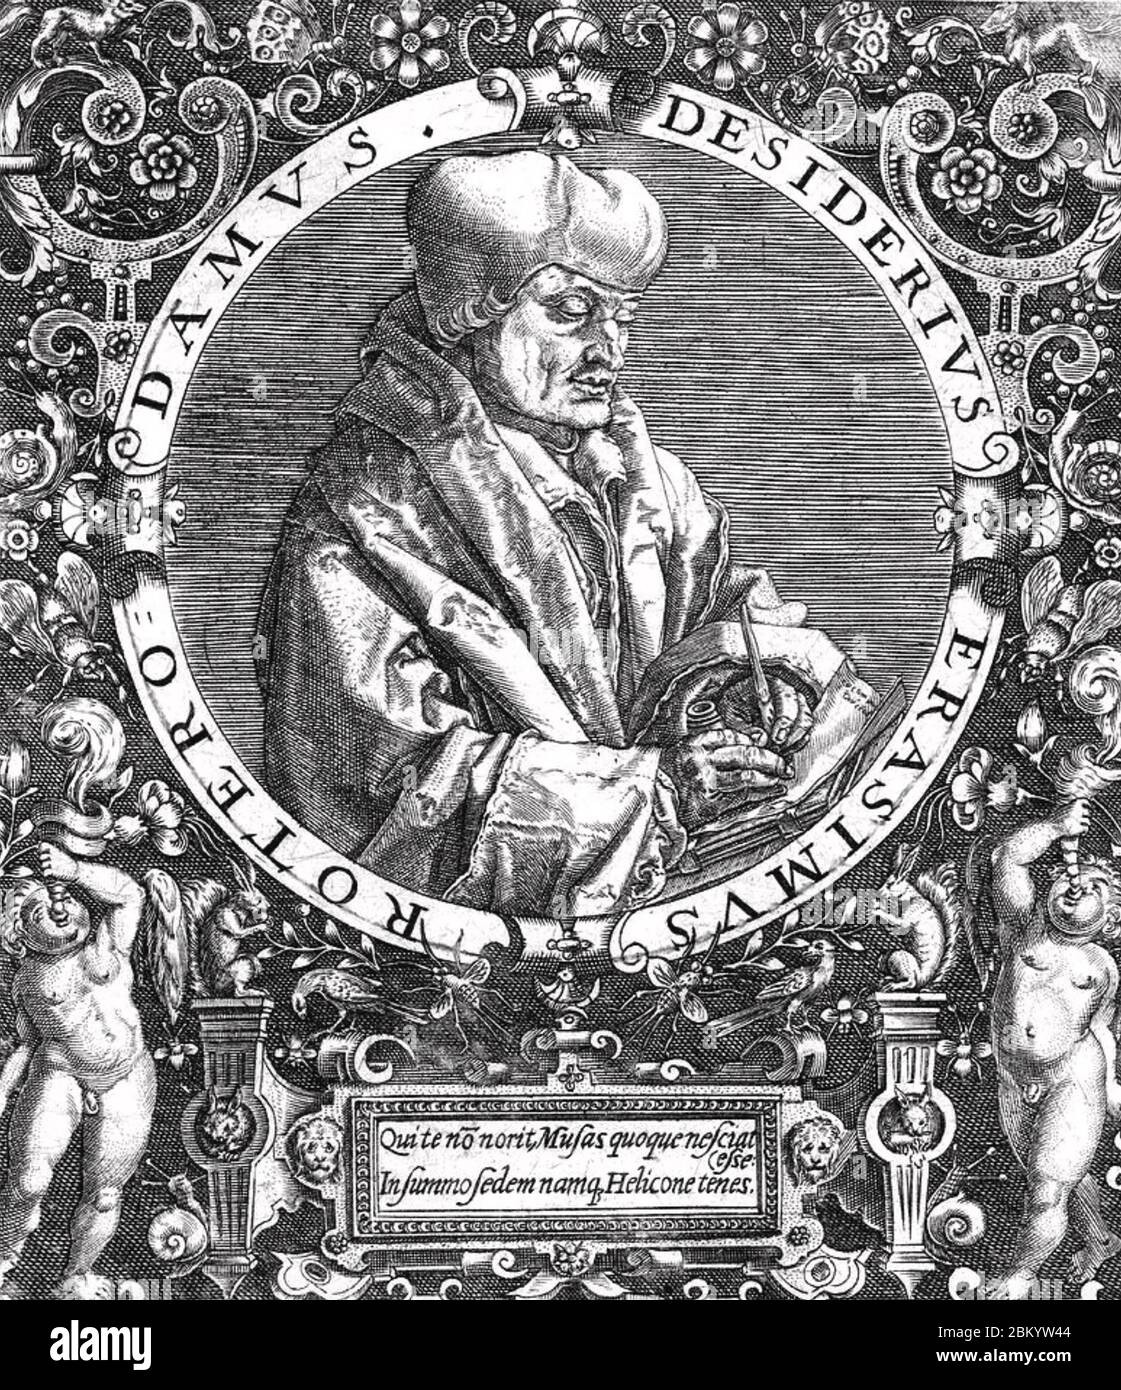 DESIDERIUS ERASMUS (1466-1536) filosofo rinascimentale olandese Foto Stock